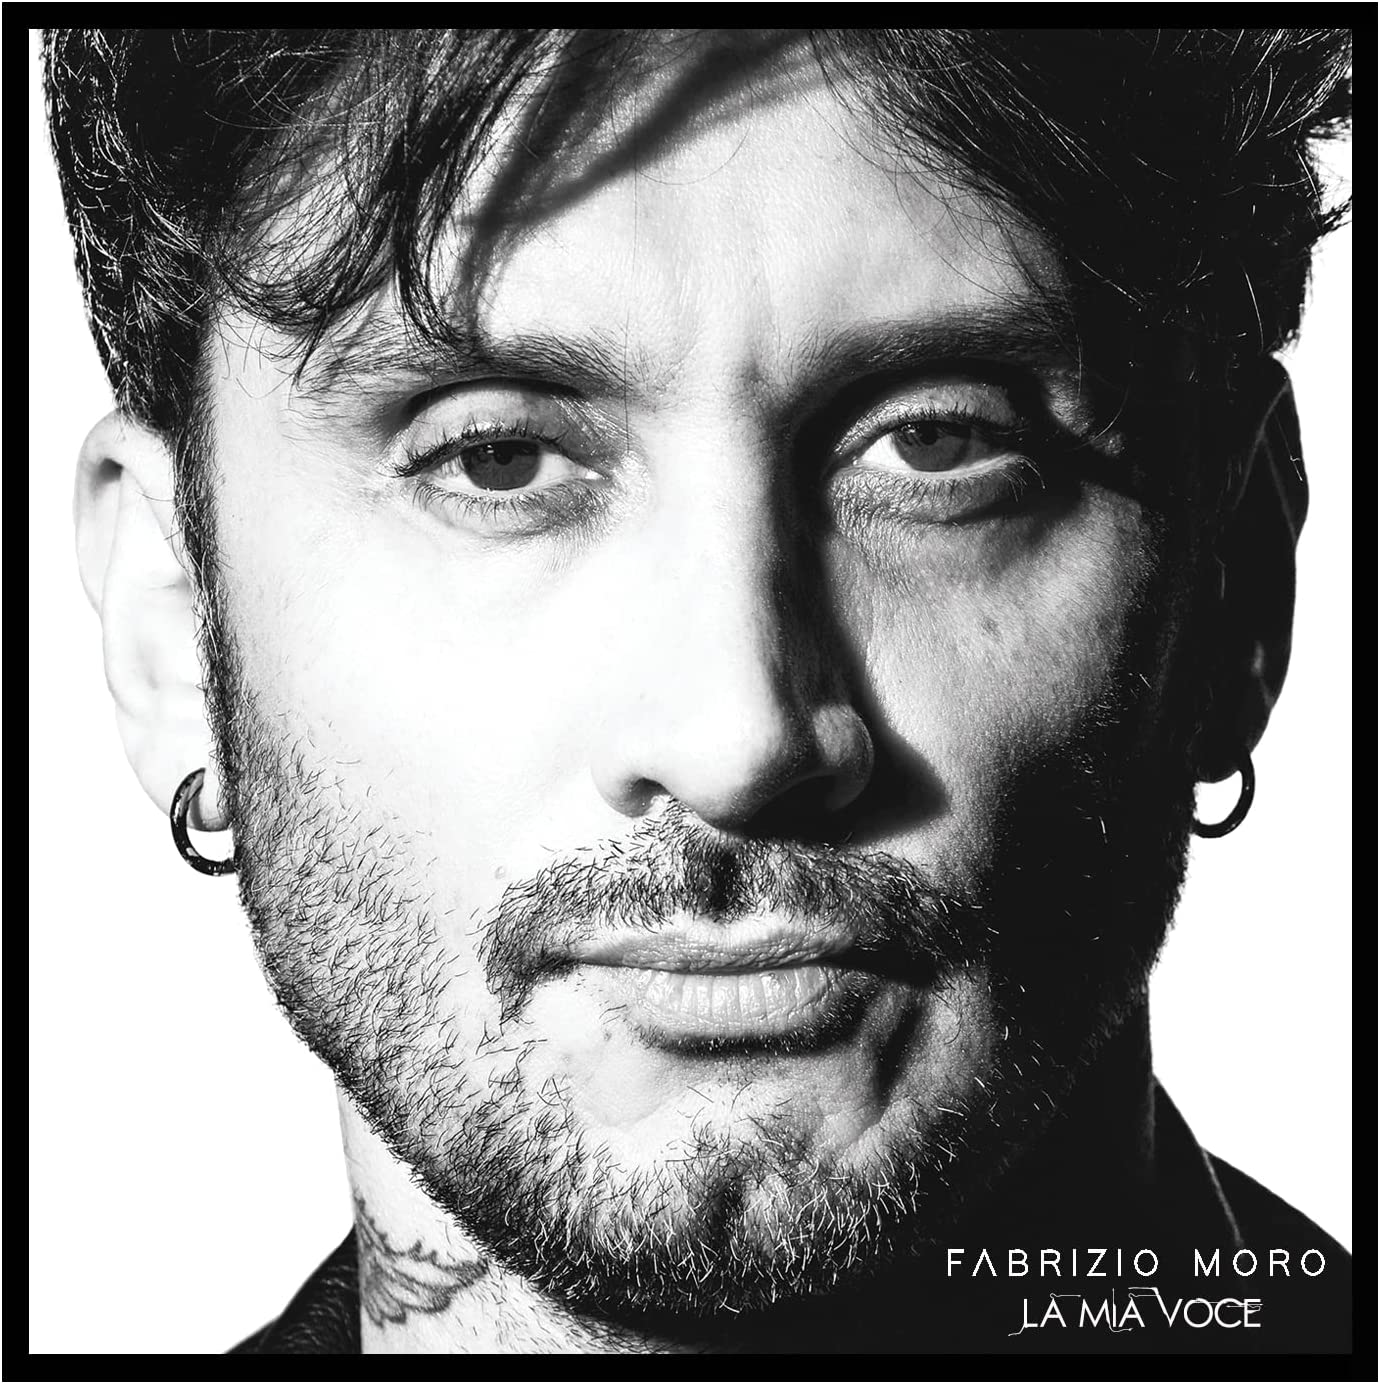 Copertina Vinile 33 giri La mia voce di Fabrizio Moro